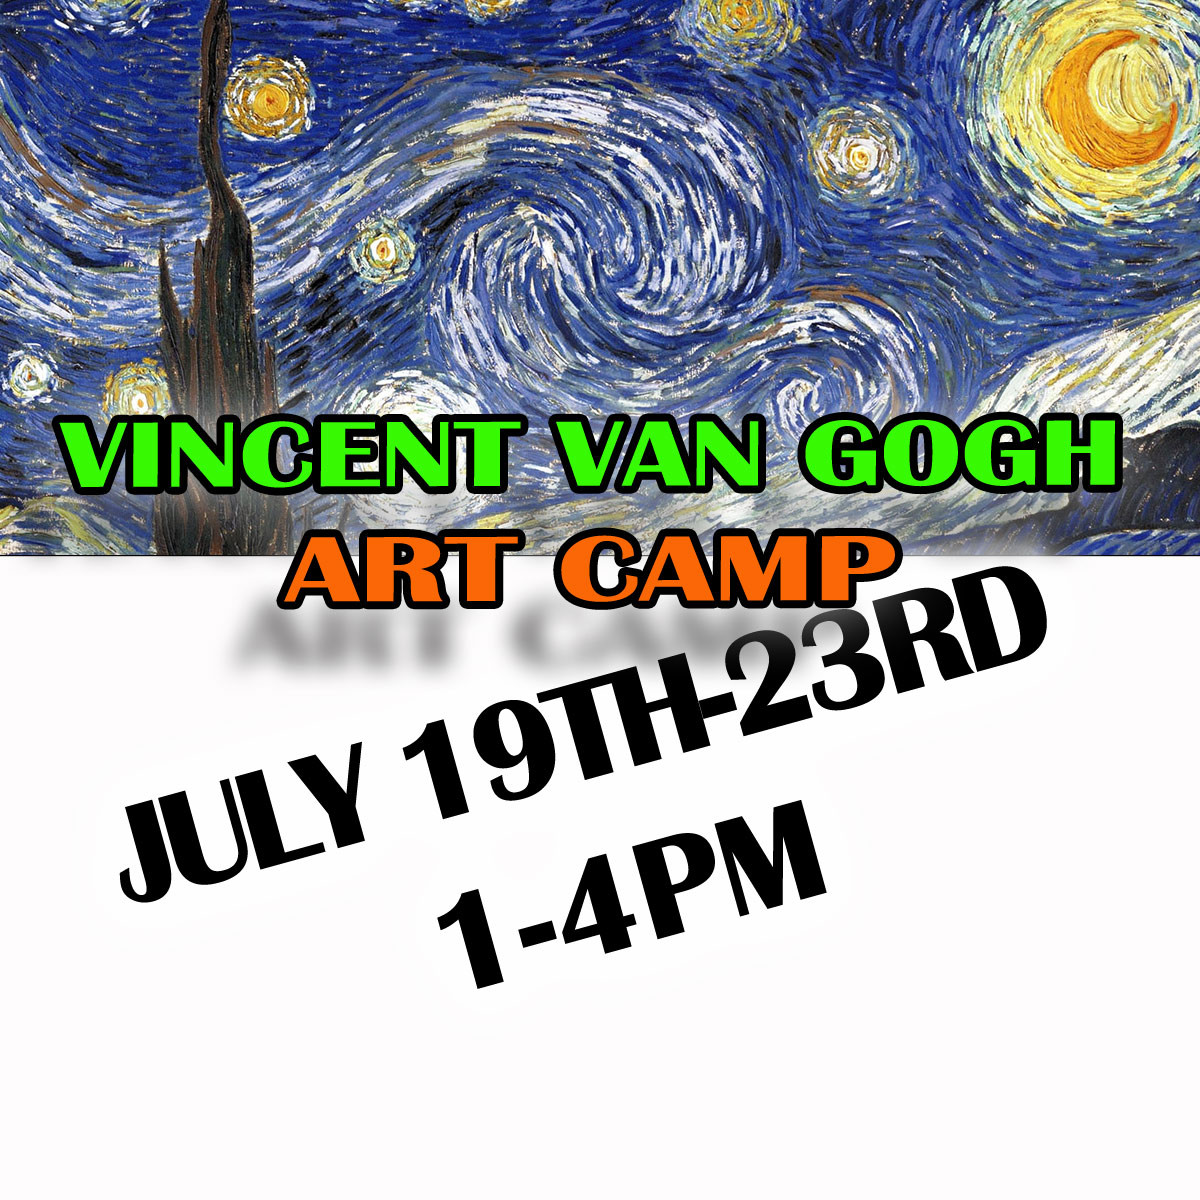 2021-JULY-19-Art-Camp-VINCENT VAN GOGH-PM.jpg